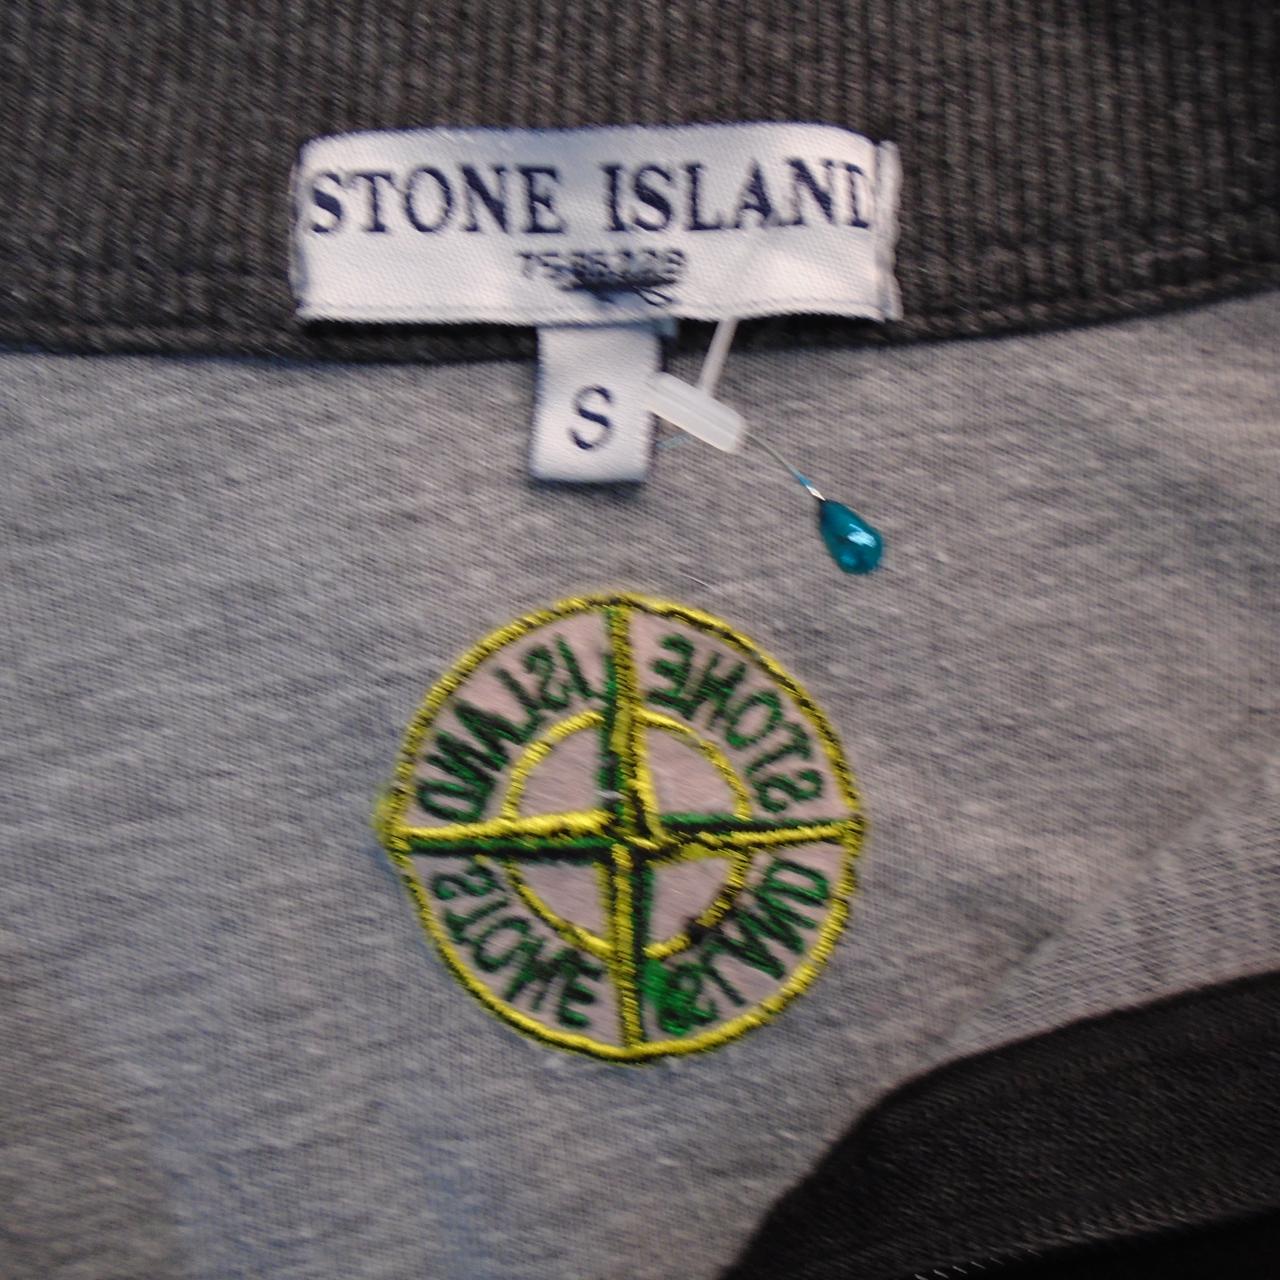 Herren-Sweatshirt Stone Island. Schwarz. S. gebraucht. Gut